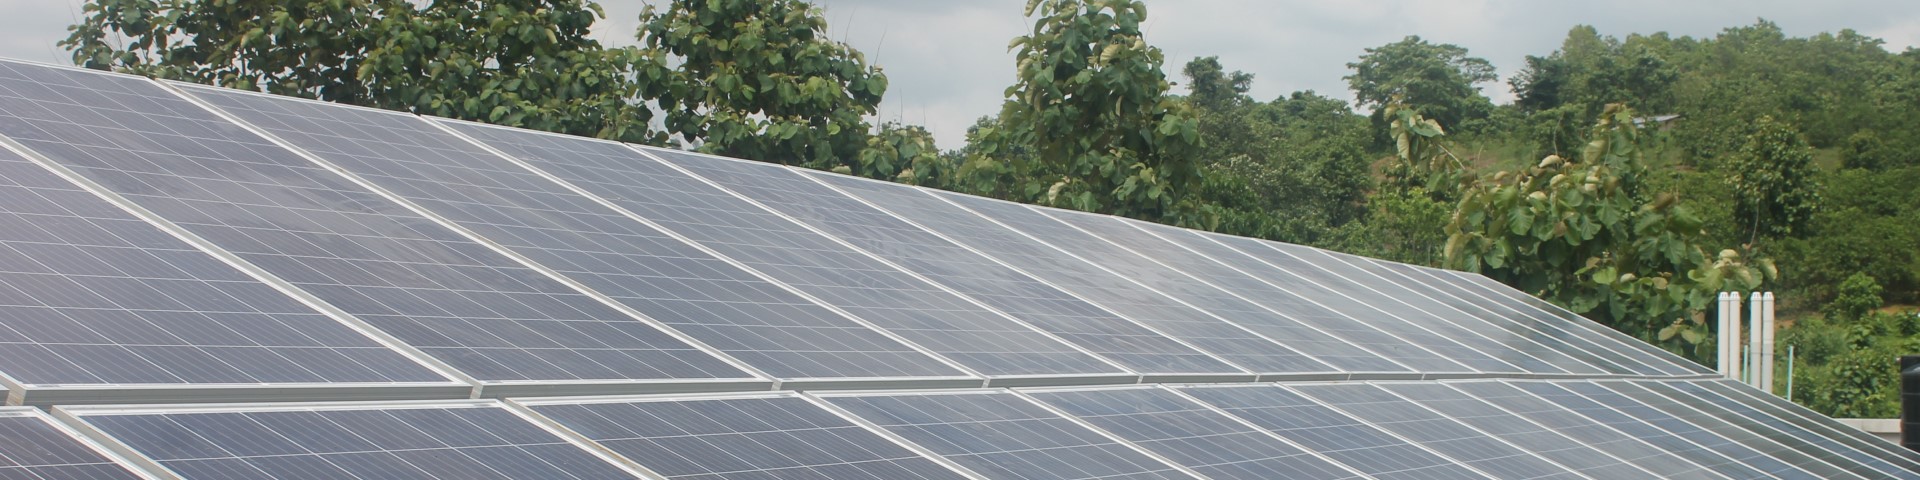 Solarpaneele auf einem Dach.